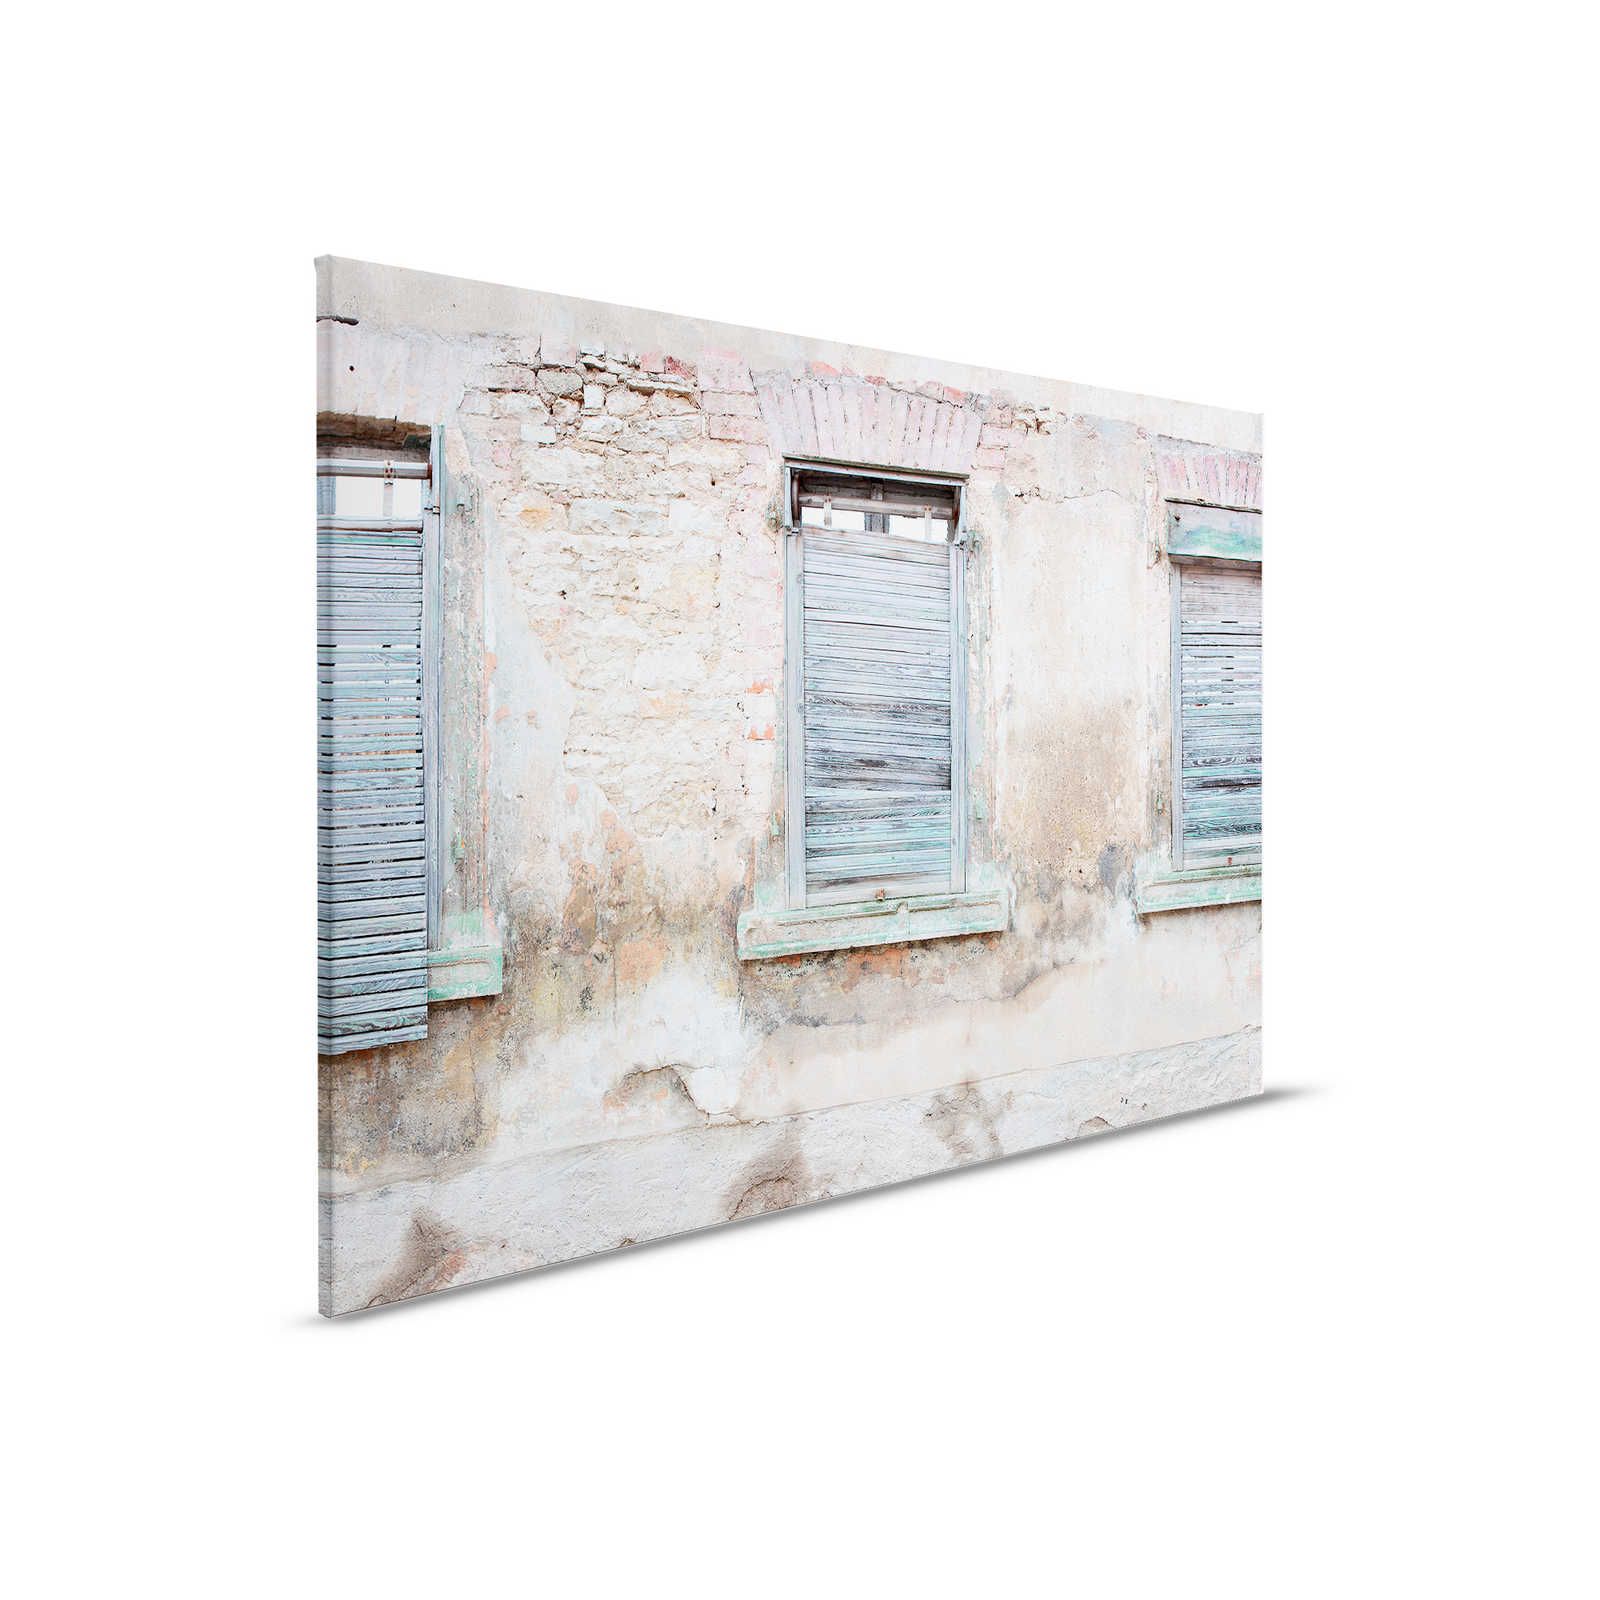         Leinwandbild Ziegelmauer mit rustikalen Fensterläden und Rundbögen – 0,90 m x 0,60 m
    